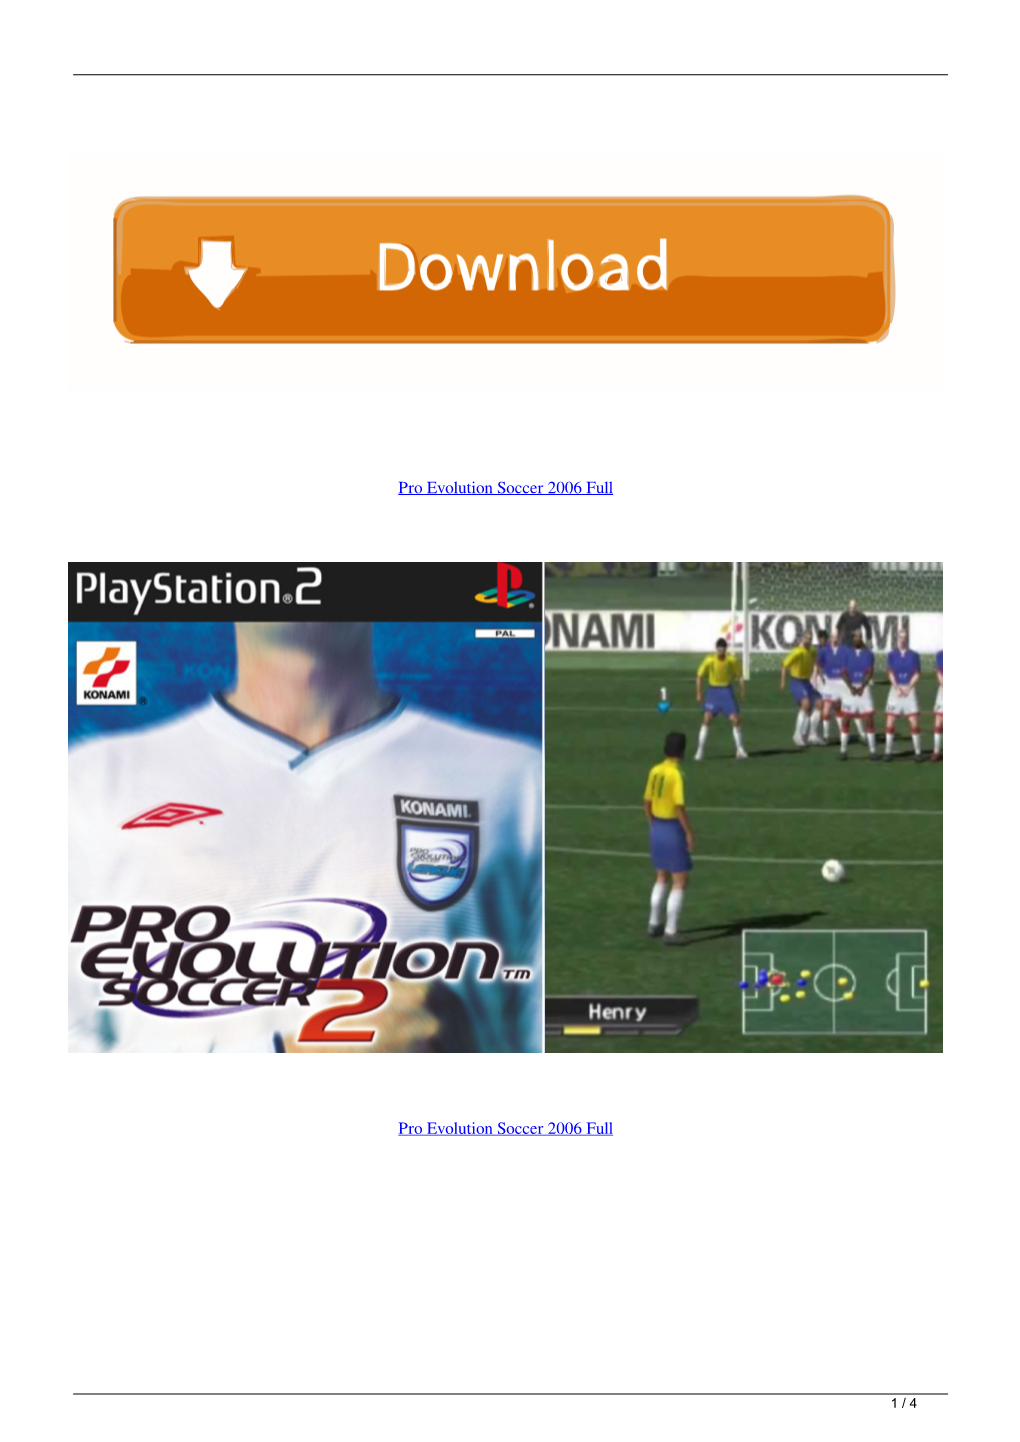 Pro Evolution Soccer 2006Full